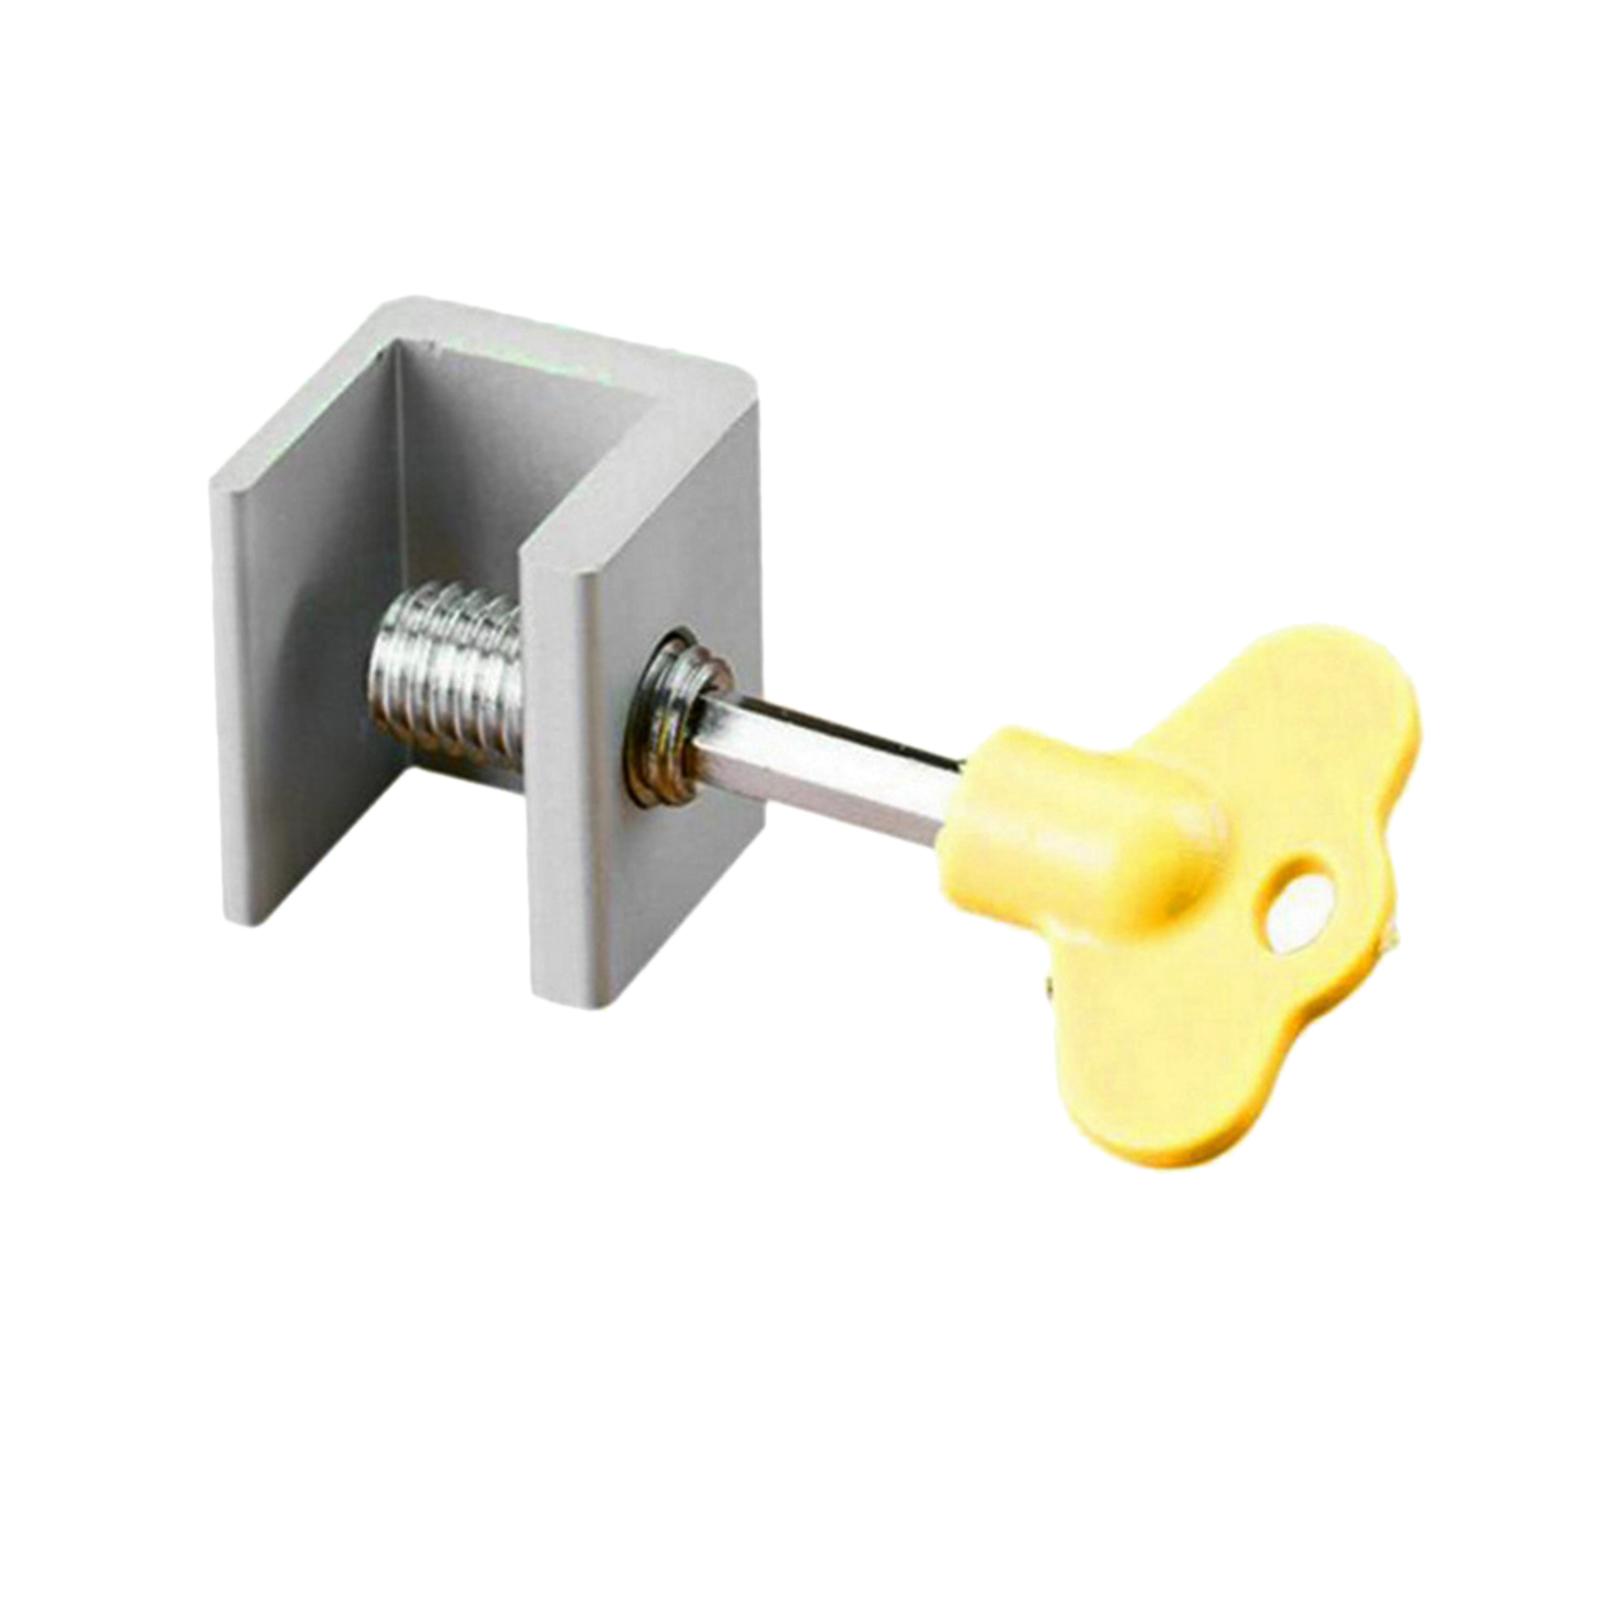 Security Sliding Door Window Lock with Keys Aluminum Alloy Door Frame Security Lock Door Stopper Hardware Safety Doors Lock